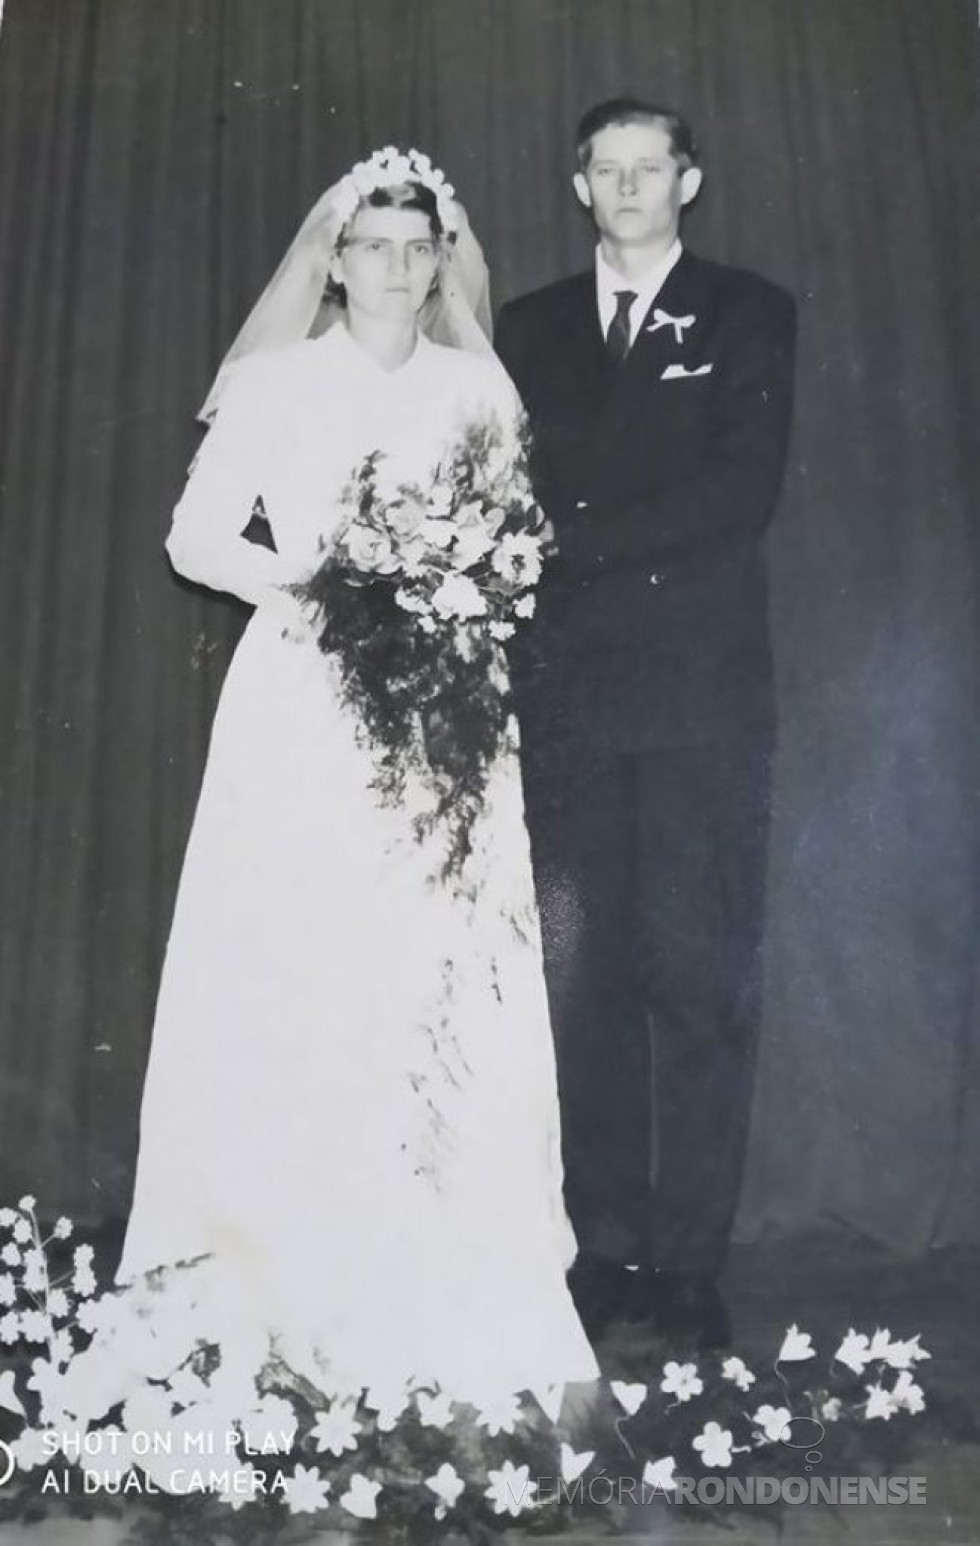 Noivos pioneiros rondonenses Elly Aline Engelmann e Lauro Dreyer que se casaram em junho de 1962.
Imagem: Acervo Hedry Dreyer Campos - FOTO 1 - 